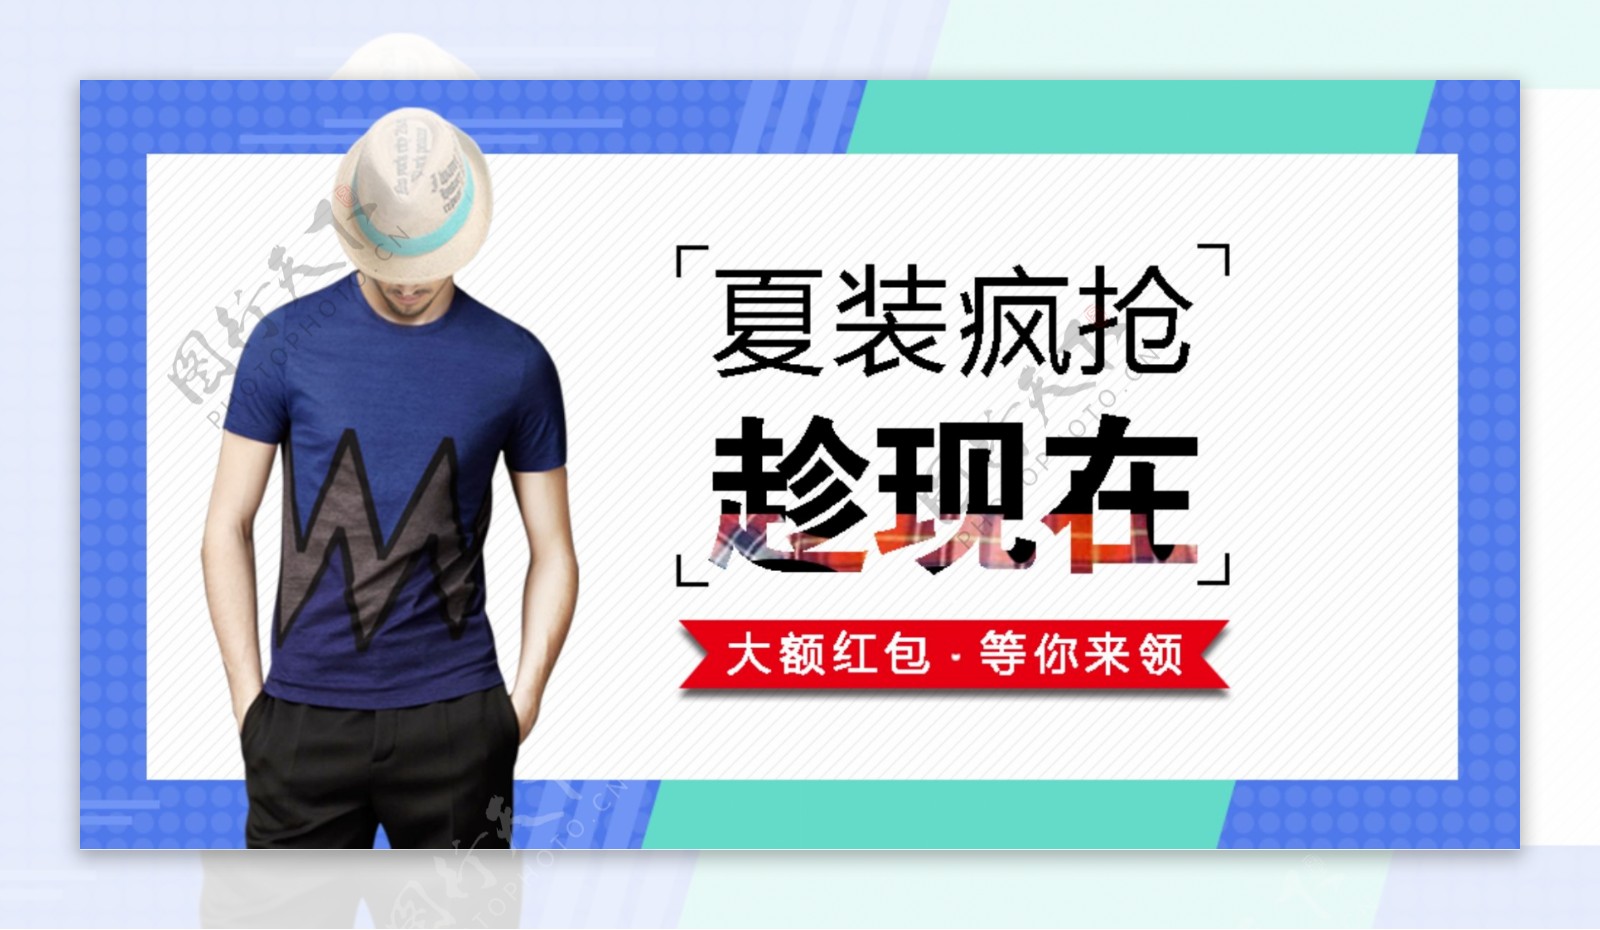 天猫淘宝男士服装夏天男模特蓝色背景海报